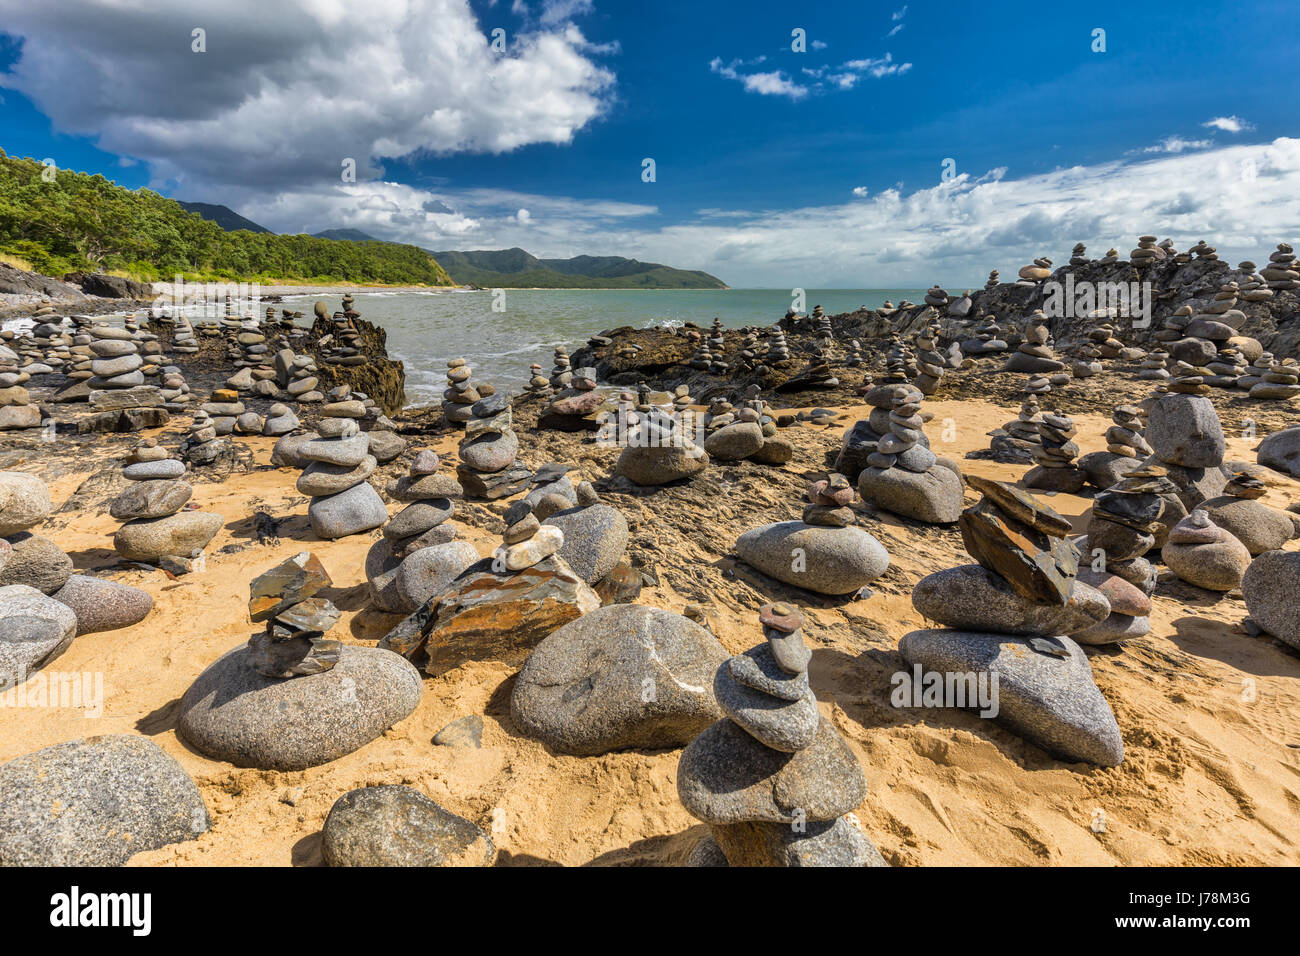 L'équilibrage de rochers empilés sur la plage entre Cairns et Port Douglas, Queensland, Australie Banque D'Images